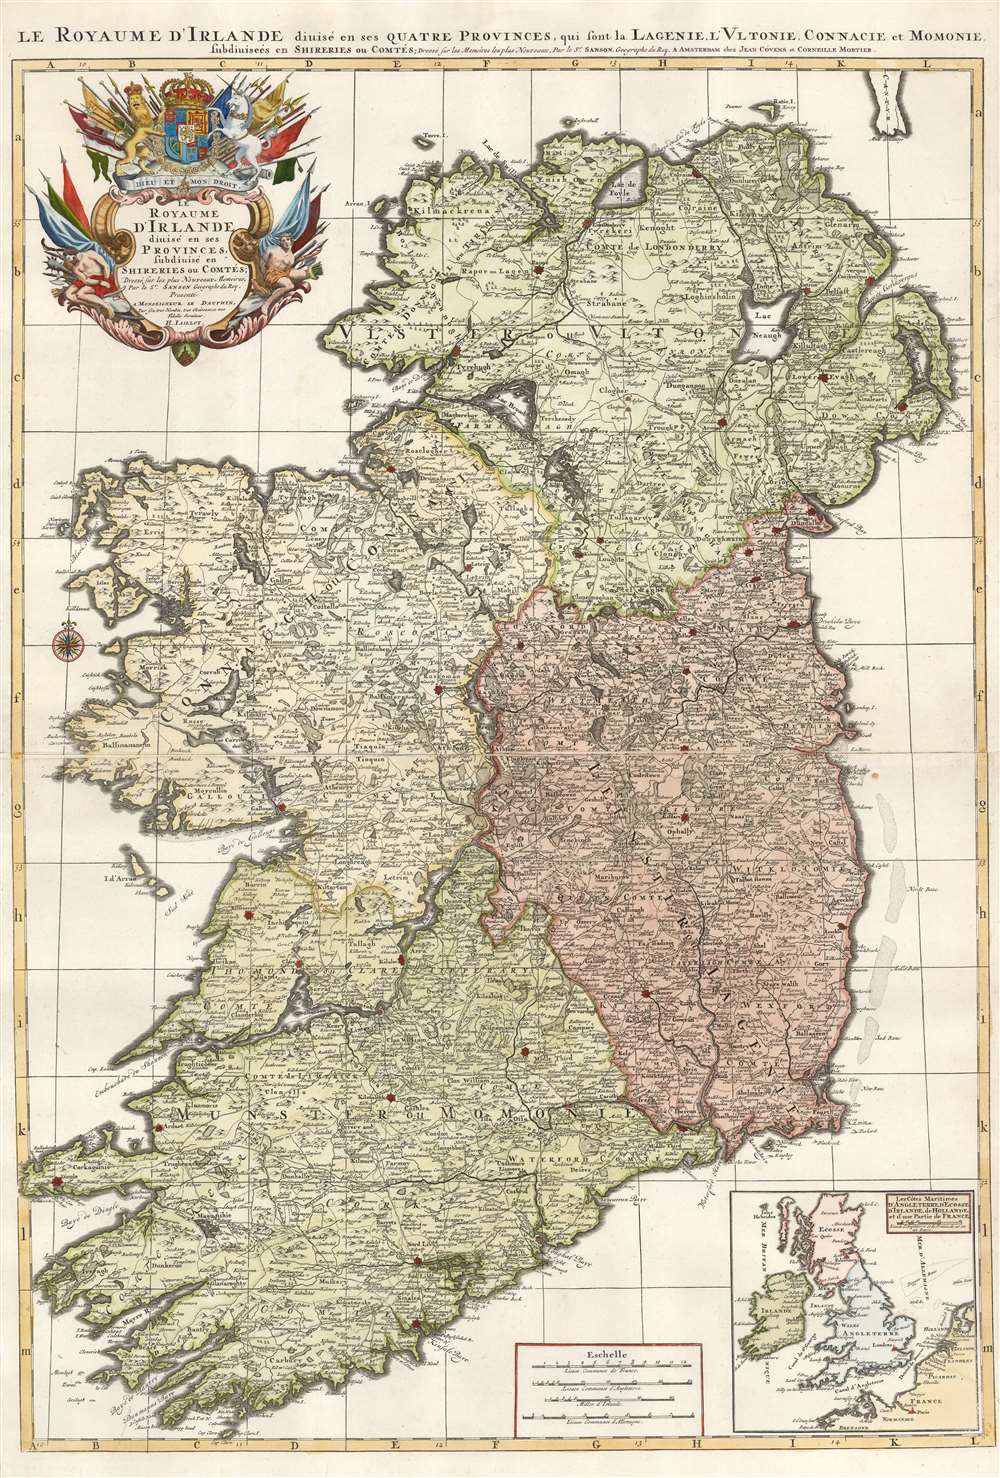 Le Royaume d'Irlande divisé en ses provinces, subdivisé en Shireries ou Comtes... - Main View